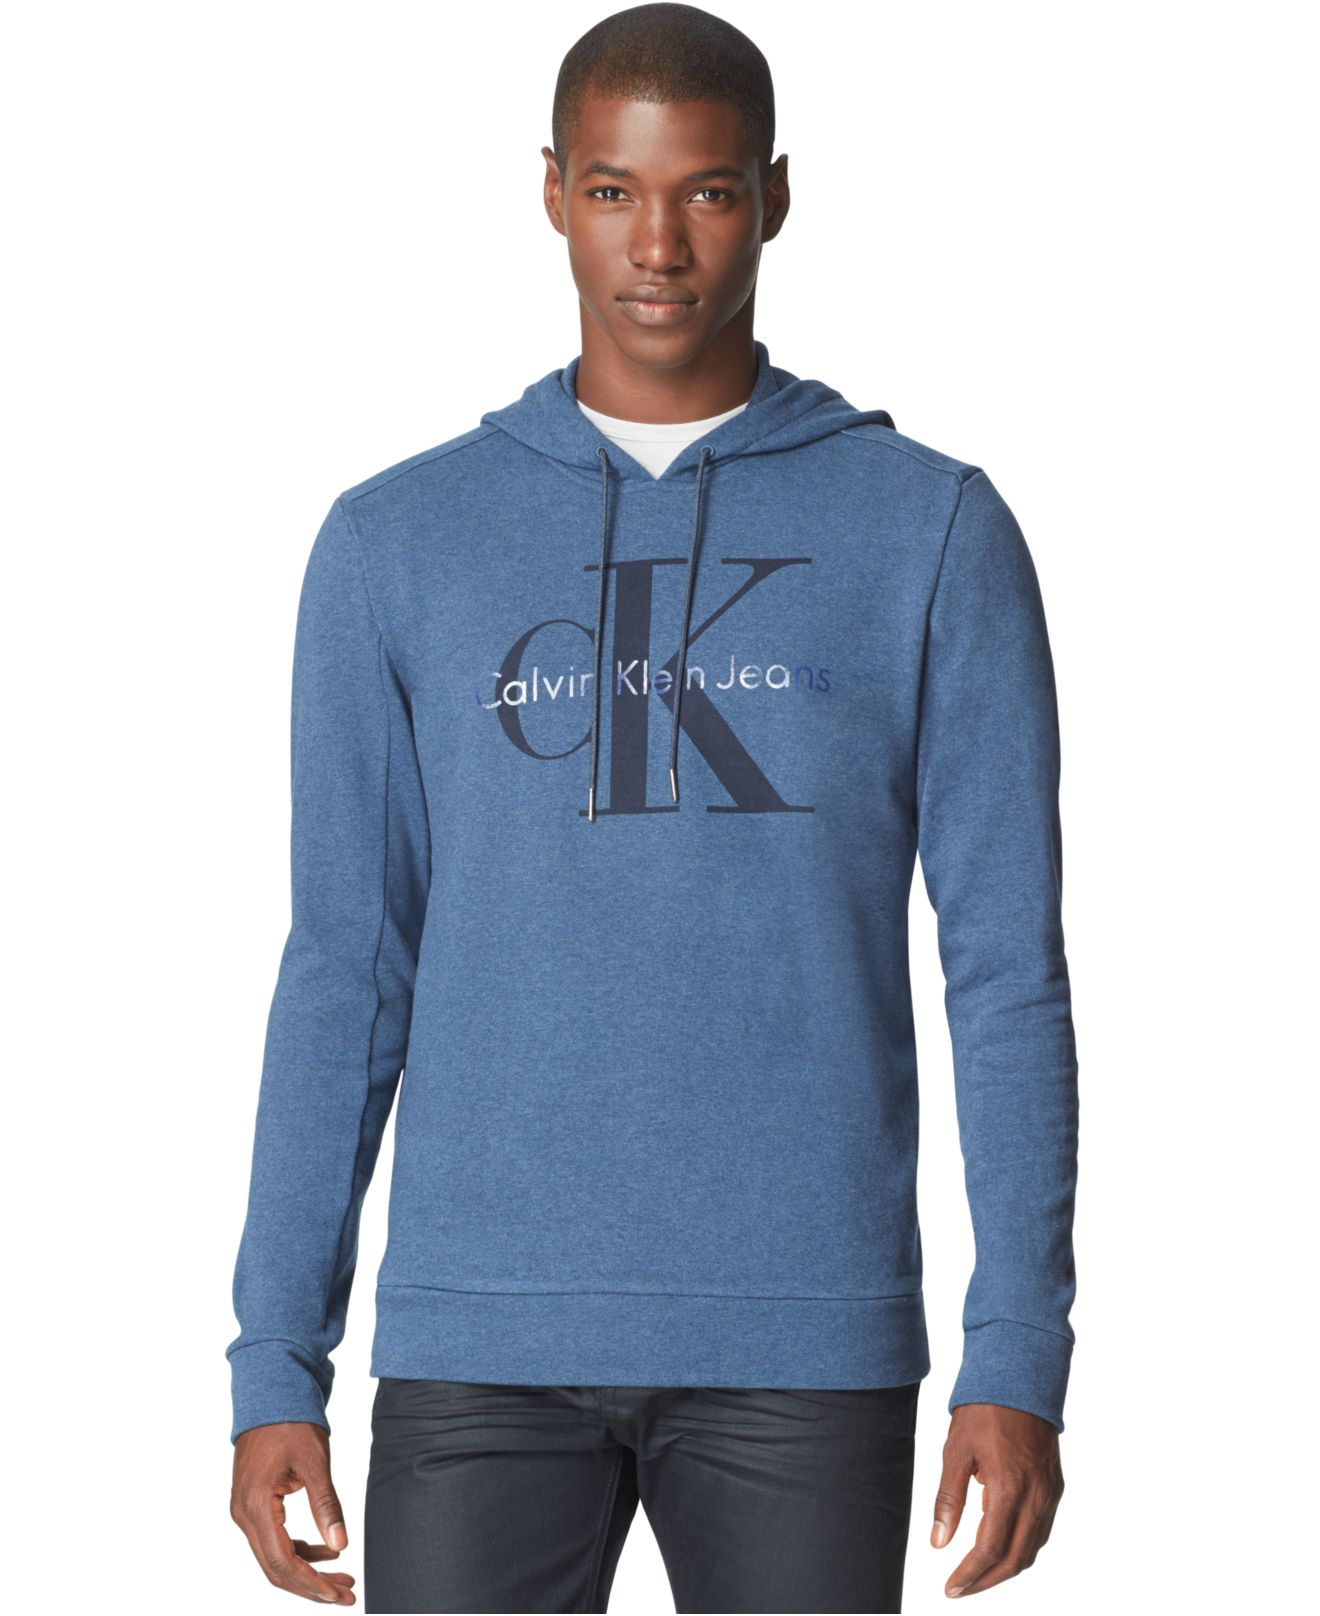 Calvin Klein Logo Hoodie in Midnight Indigo Heather (Blue) for Men - Lyst